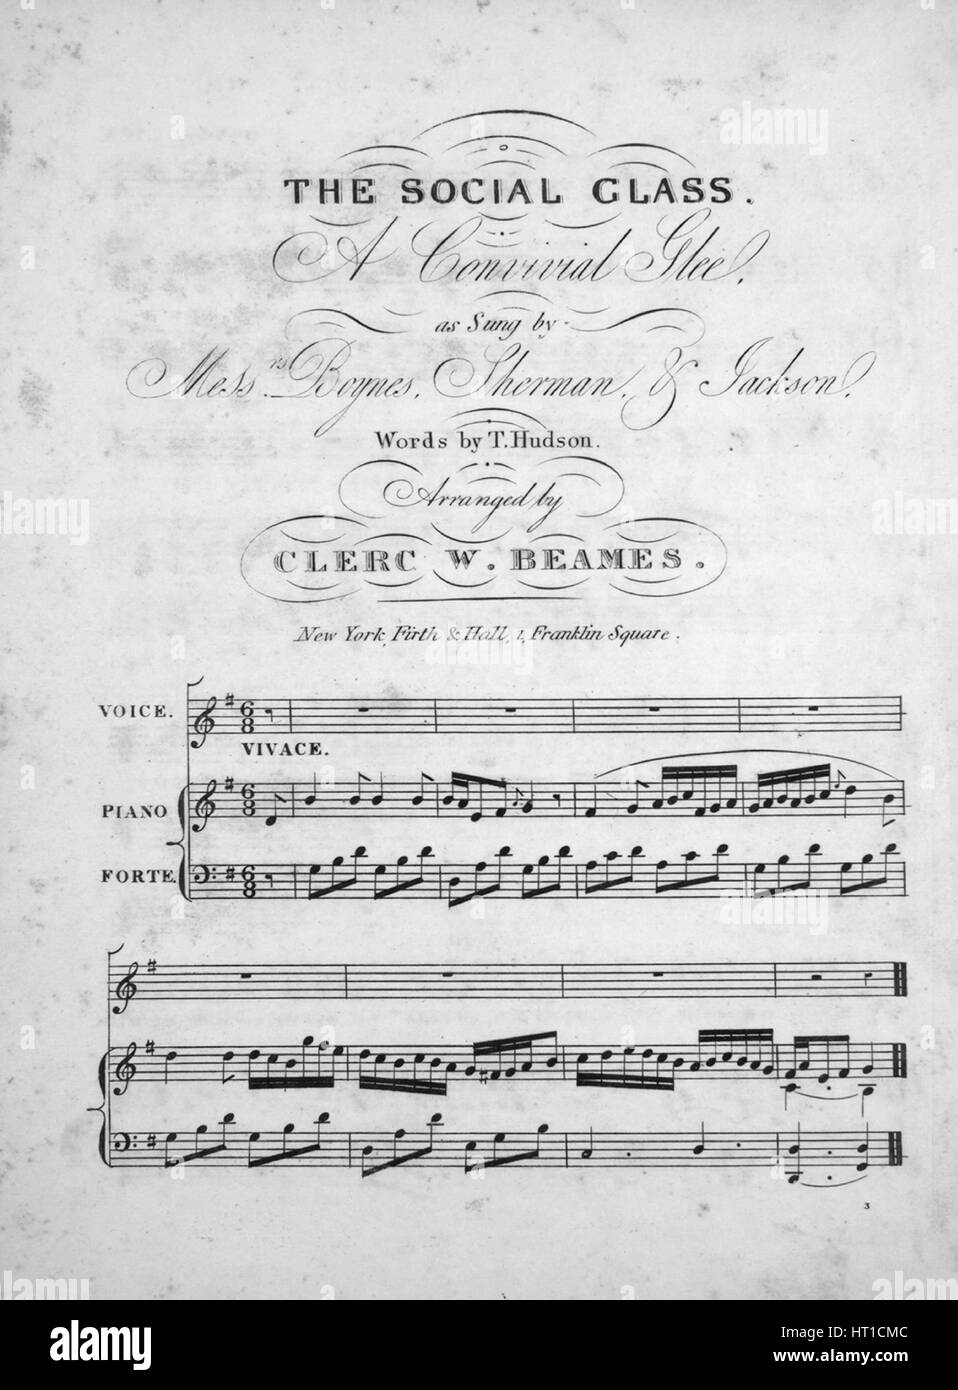 Imagen de cubierta de partituras de la canción "La Clase Social Convidada  Glee", con notas de autoría original leyendo 'palabras por T Hudson  organizado por Clerc W Beames', Estados Unidos, 1900. El